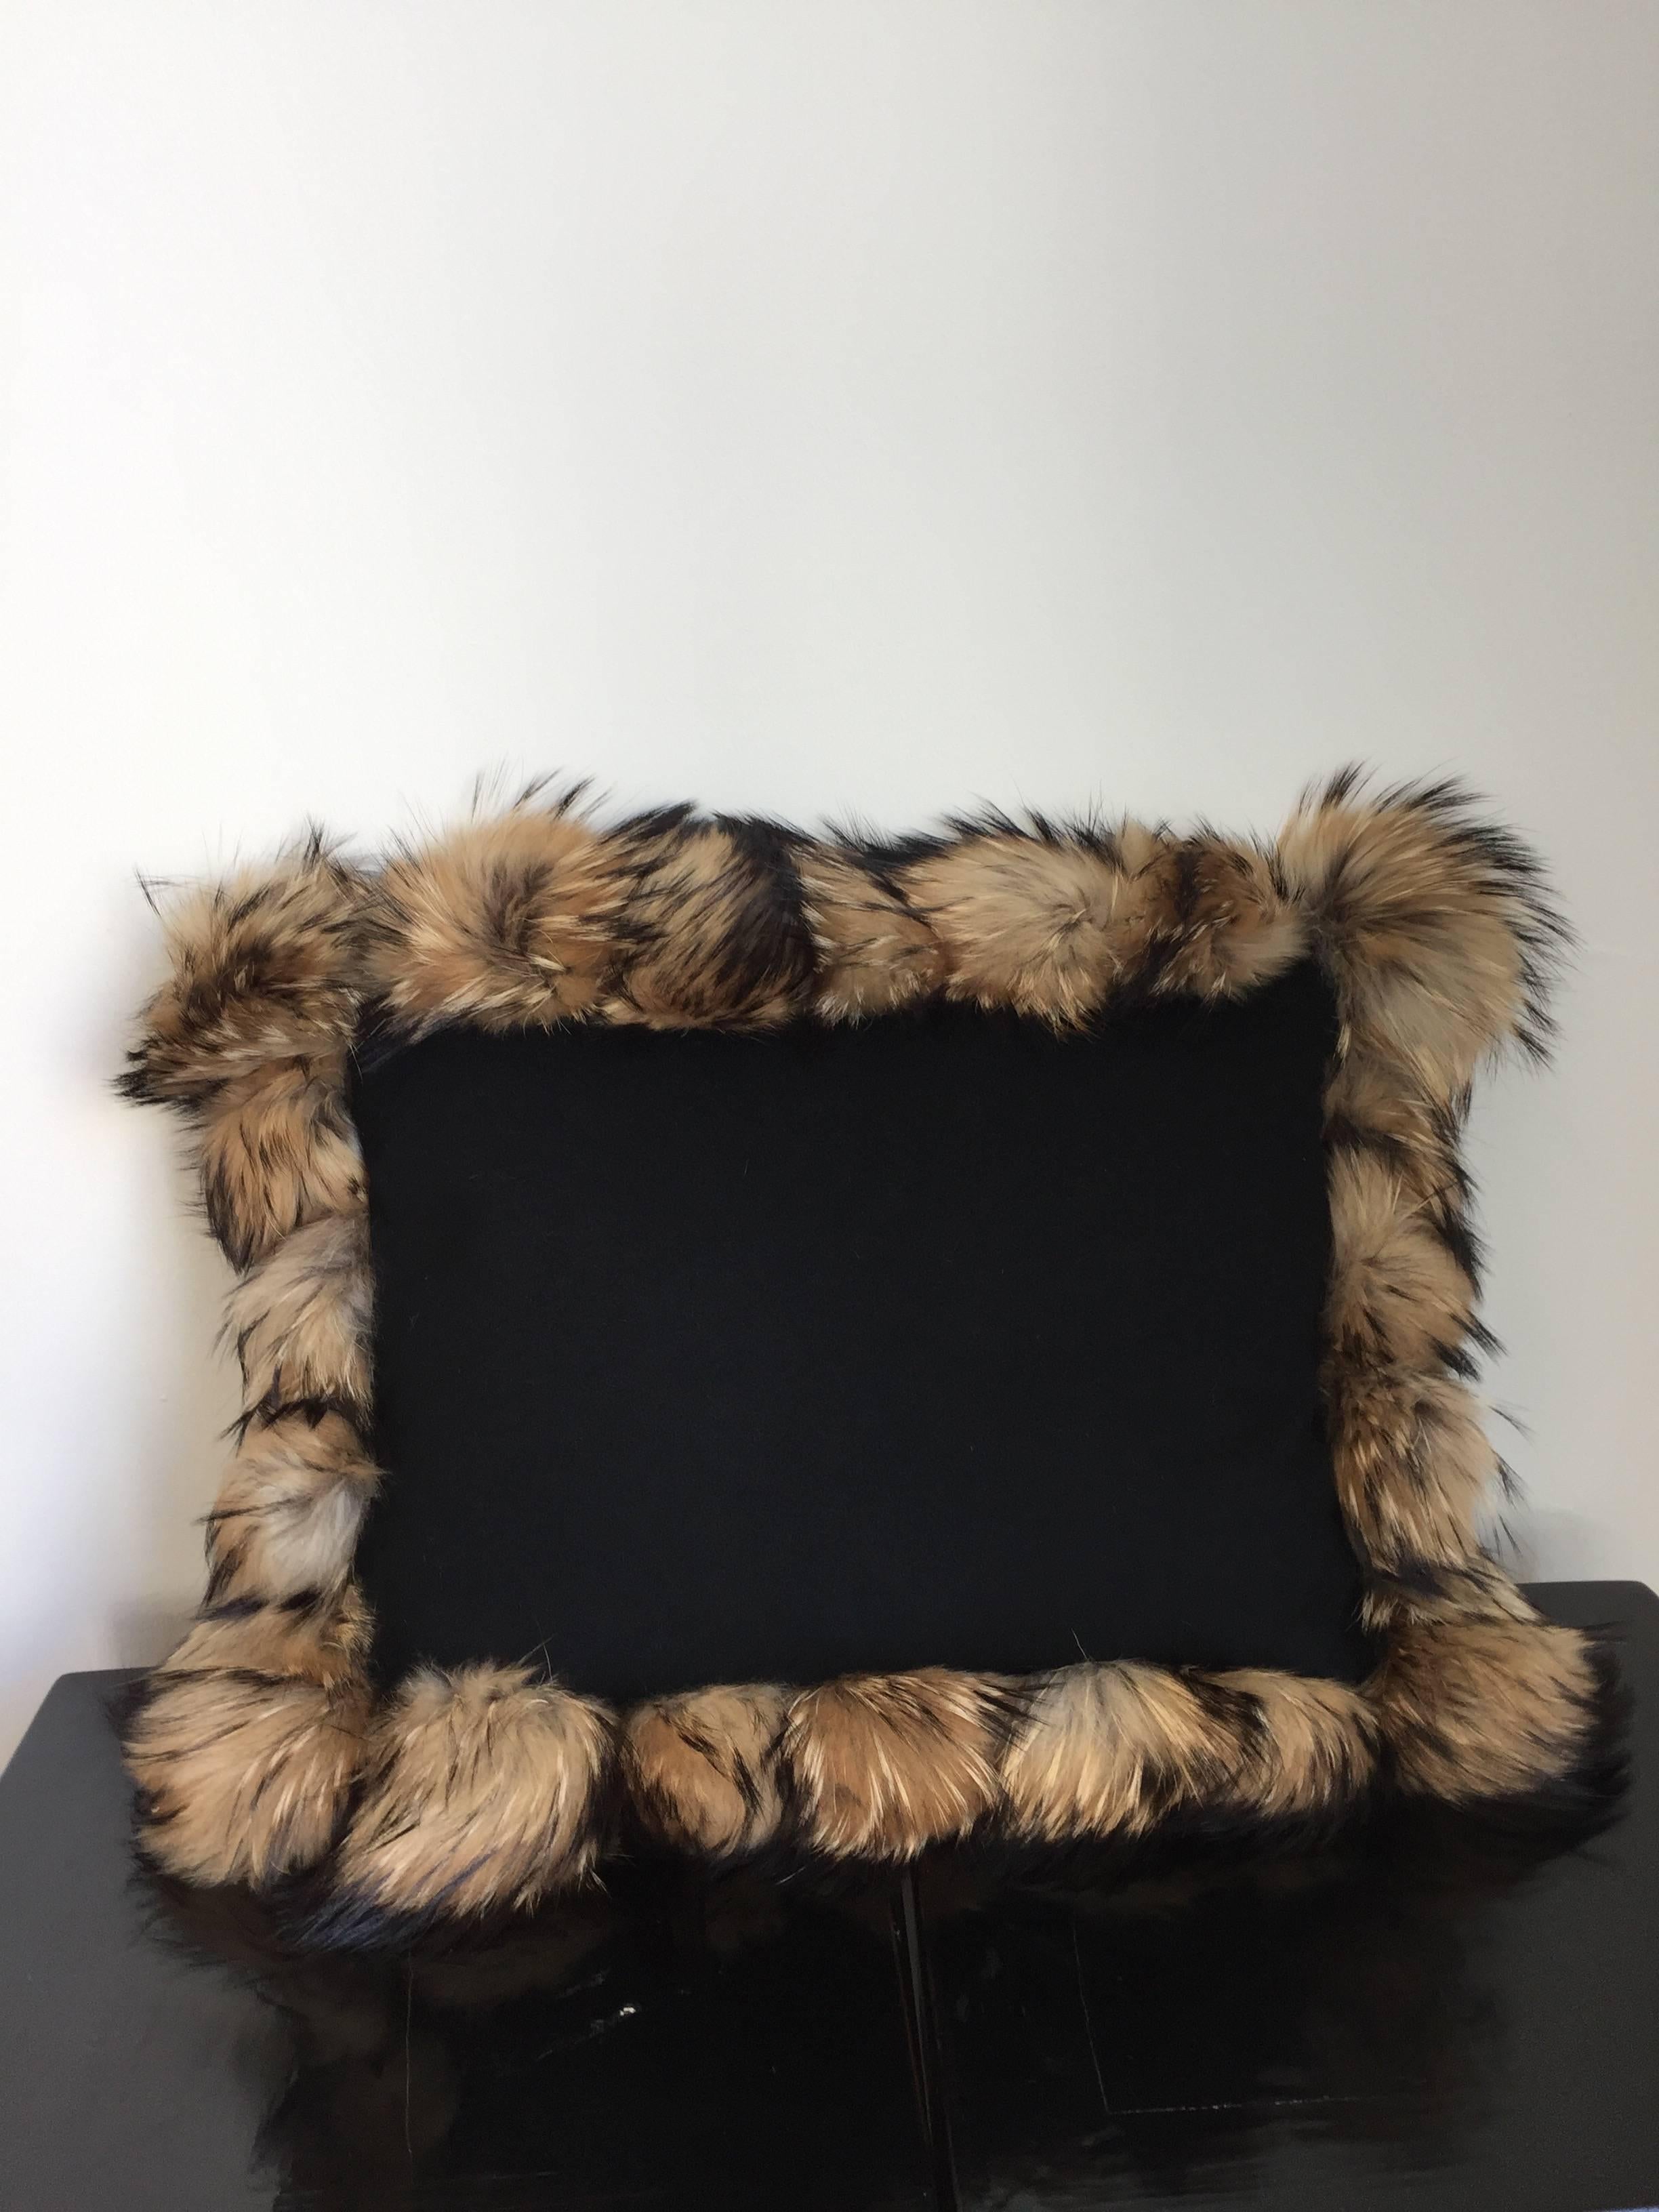 Coussins décoratifs en laine 100% cachemire de couleur noire avec garniture en fourrure Raccoon Pompons,
taille totale environ 65 x 55cm avec la garniture, taille 50 x 40cm pour les coussins en cachemire plus la garniture en fourrure faite de